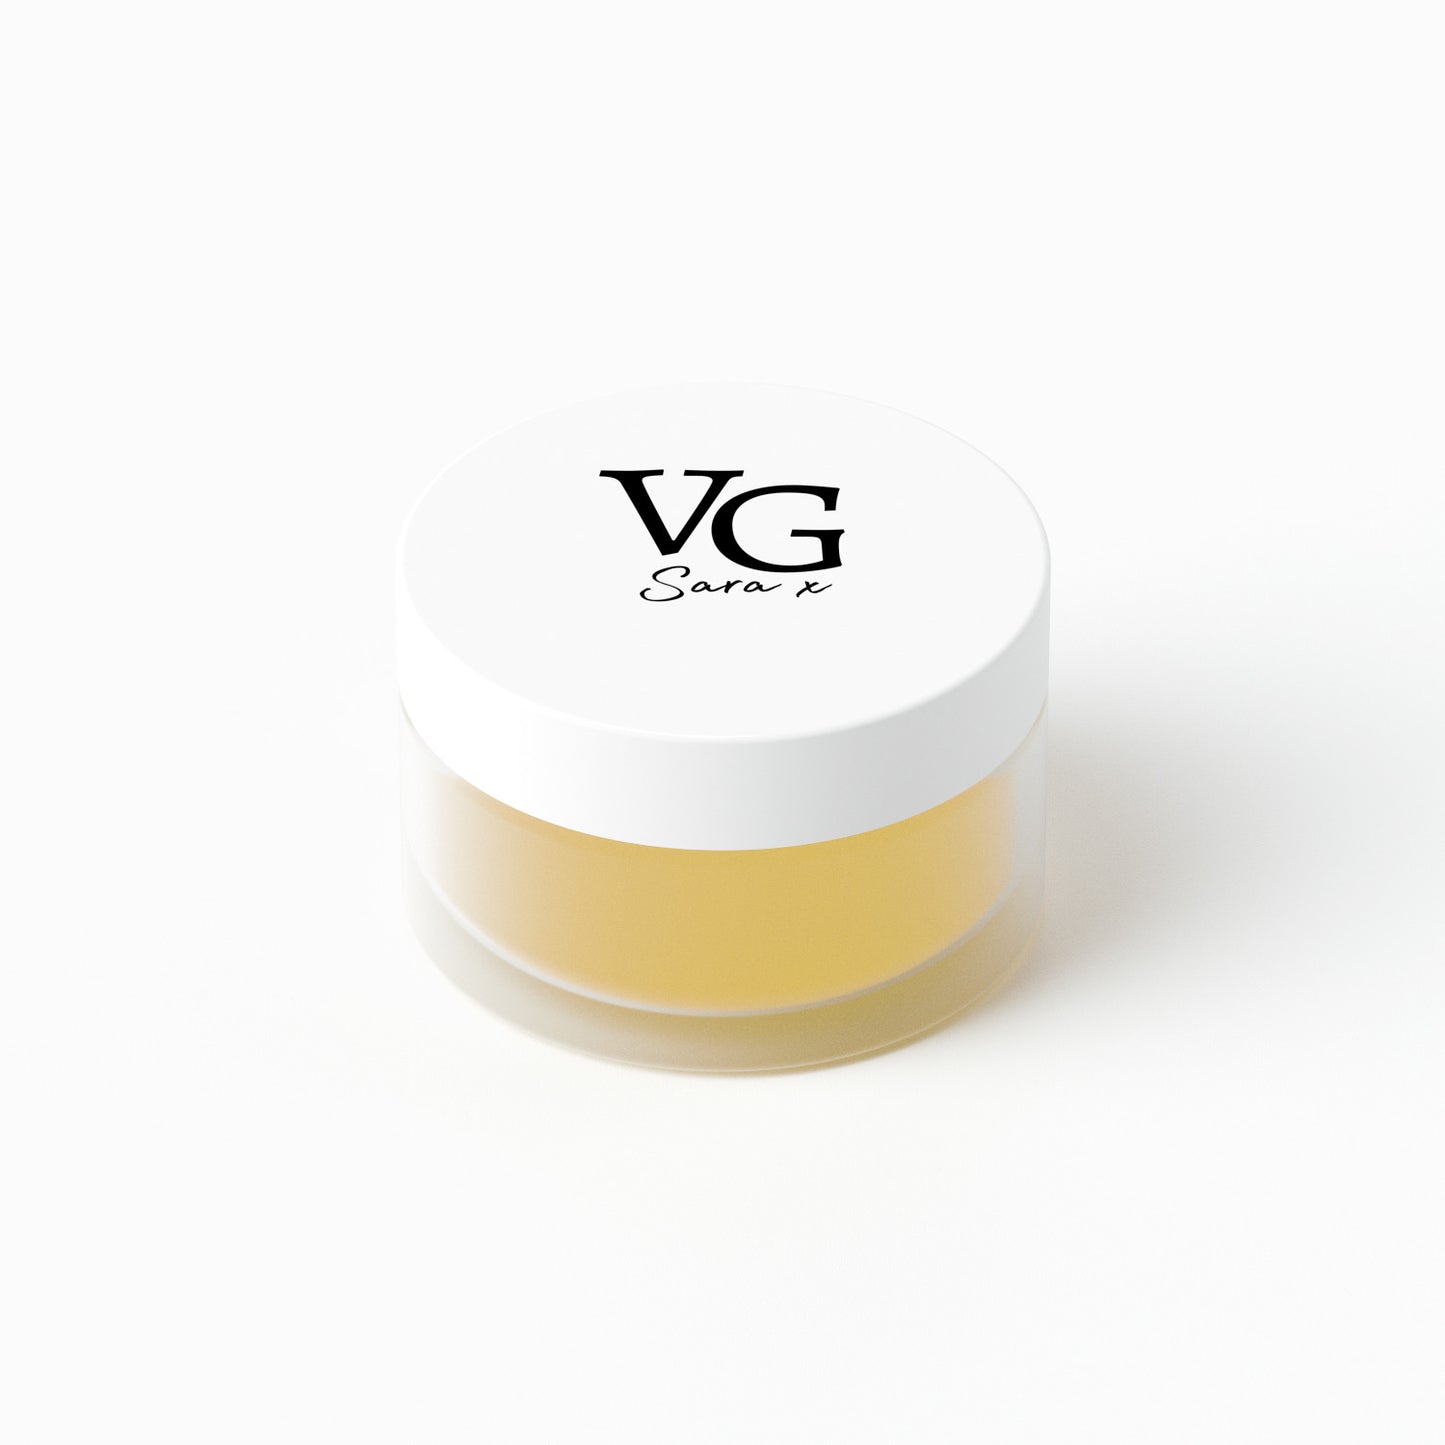 A container of cruelty-free Vitamin E lip conditioner on a white background